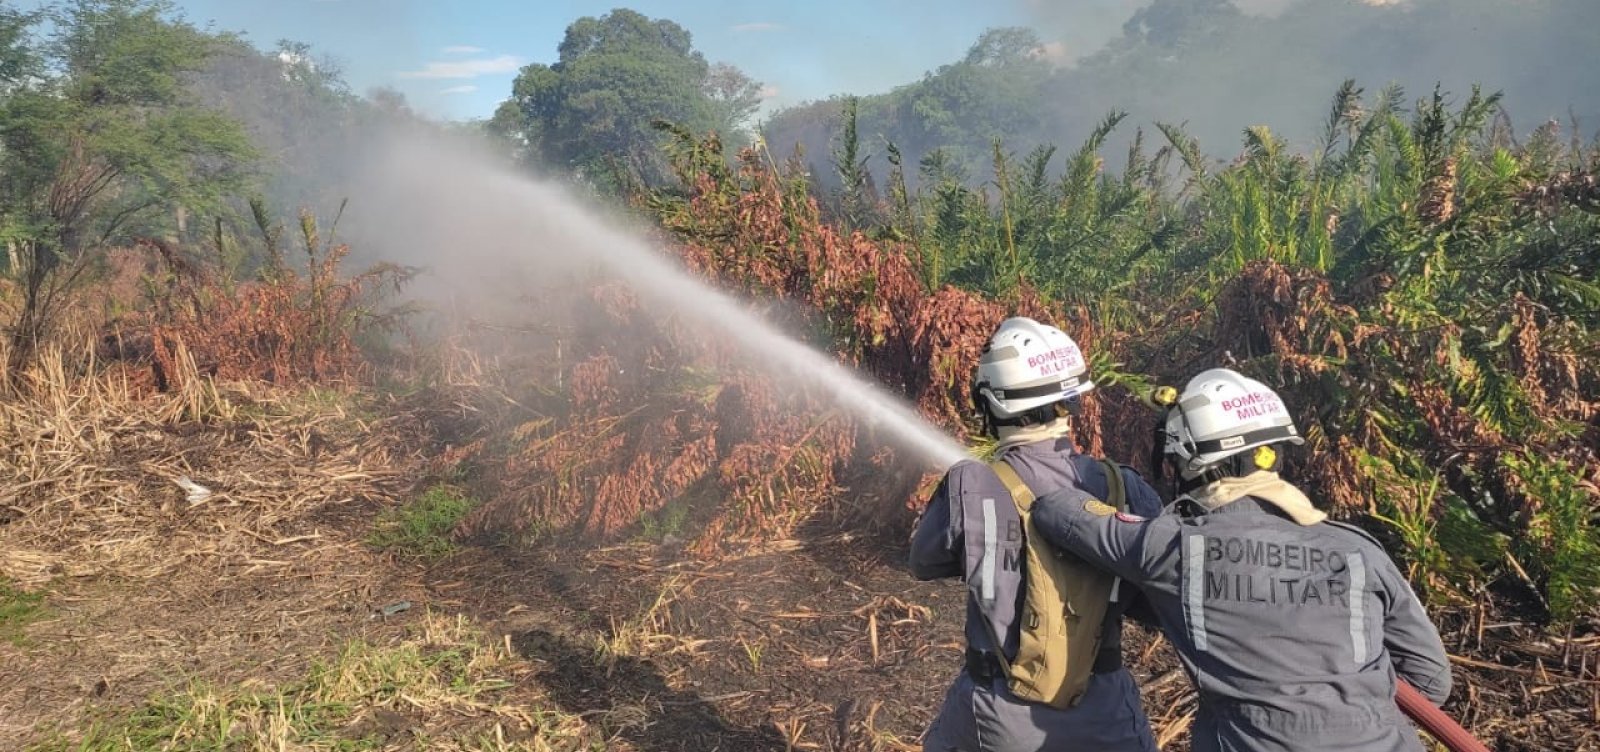 Bombeiros apagam incêndio em área da caatinga após moradores atearem fogo em madeira 